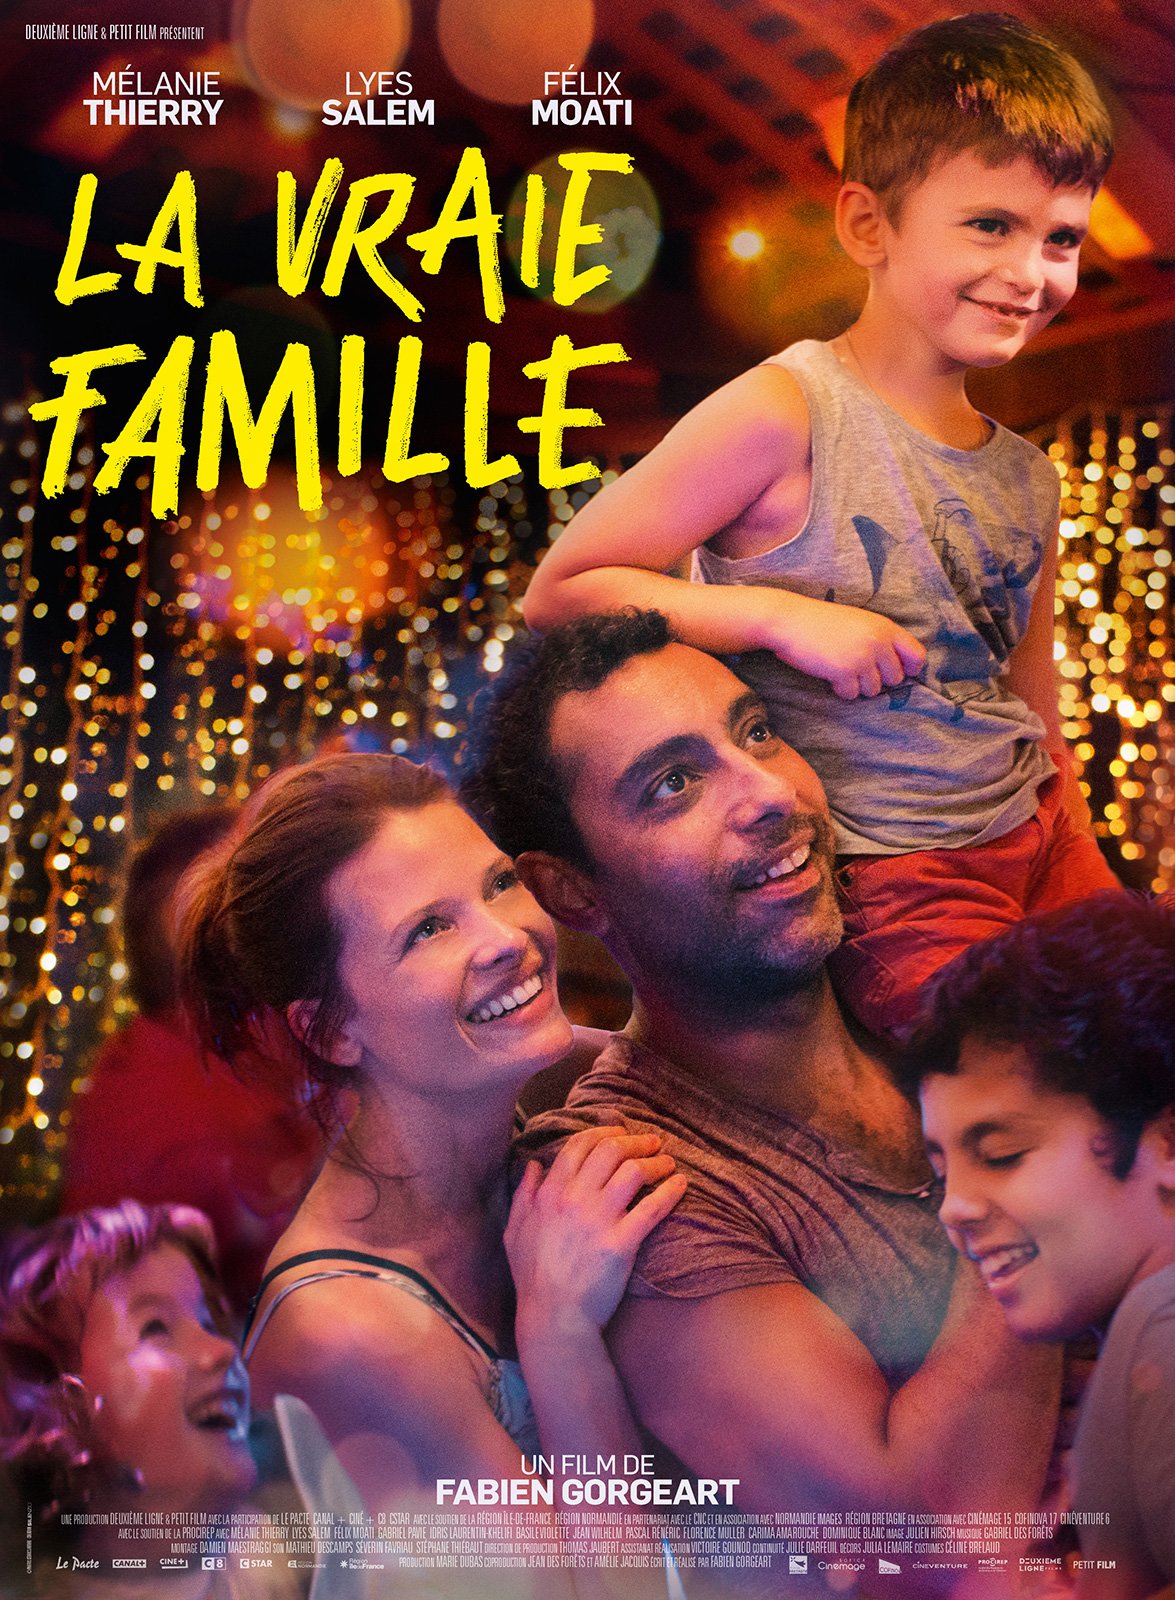 La Vraie famille - film 2020 - AlloCiné